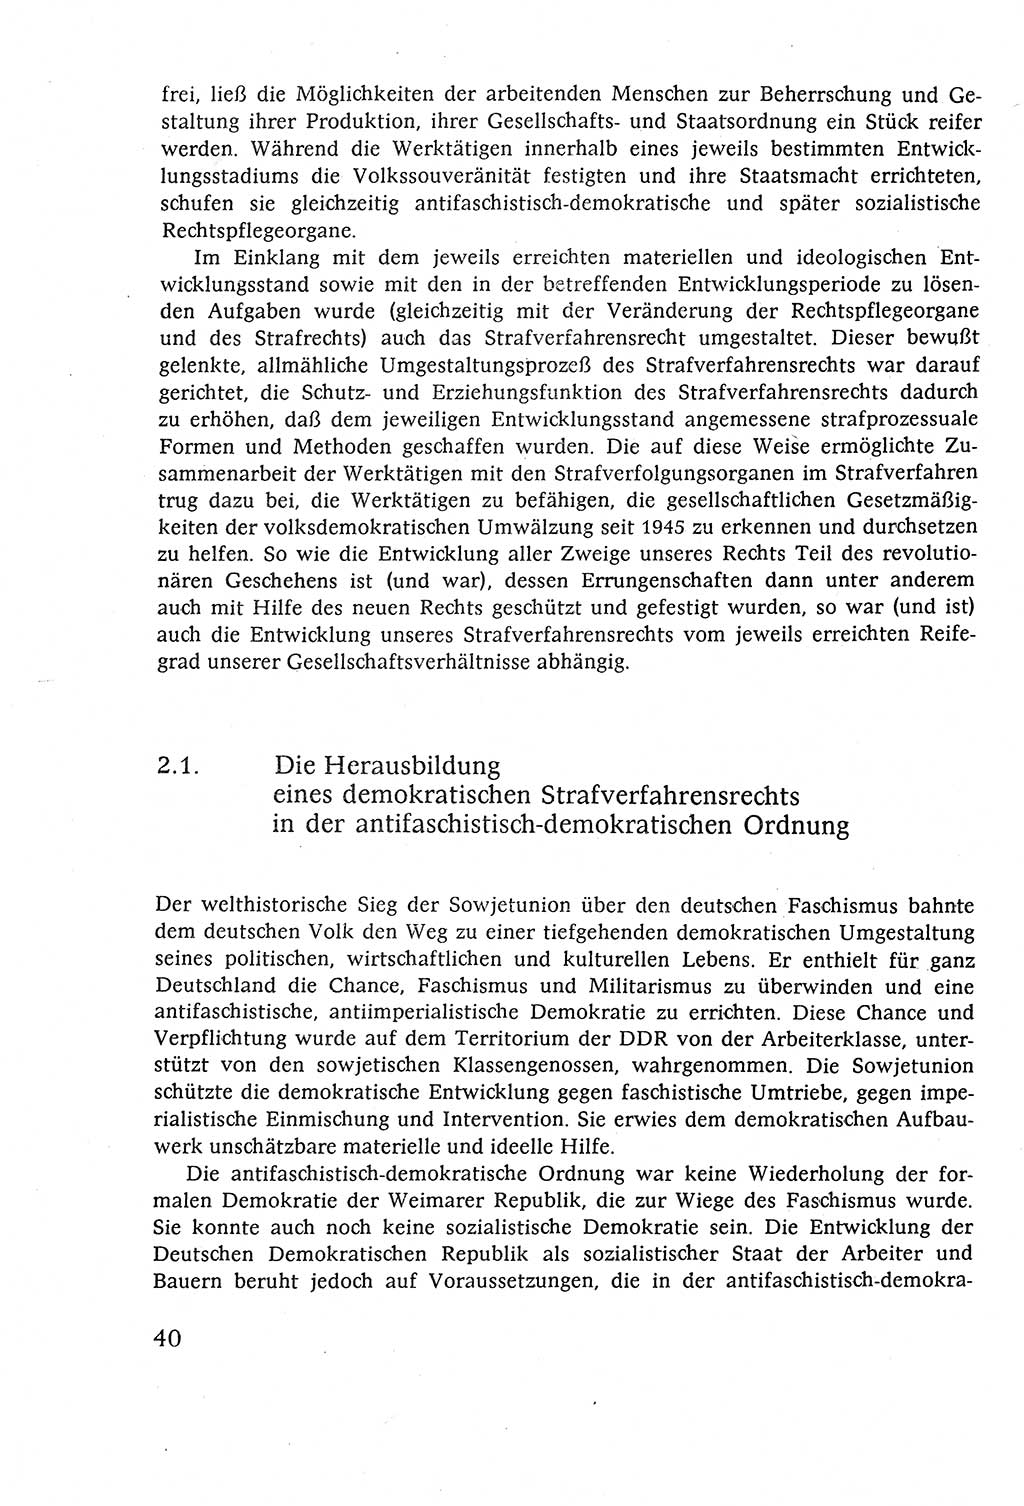 Strafverfahrensrecht [Deutsche Demokratische Republik (DDR)], Lehrbuch 1977, Seite 40 (Strafverf.-R. DDR Lb. 1977, S. 40)